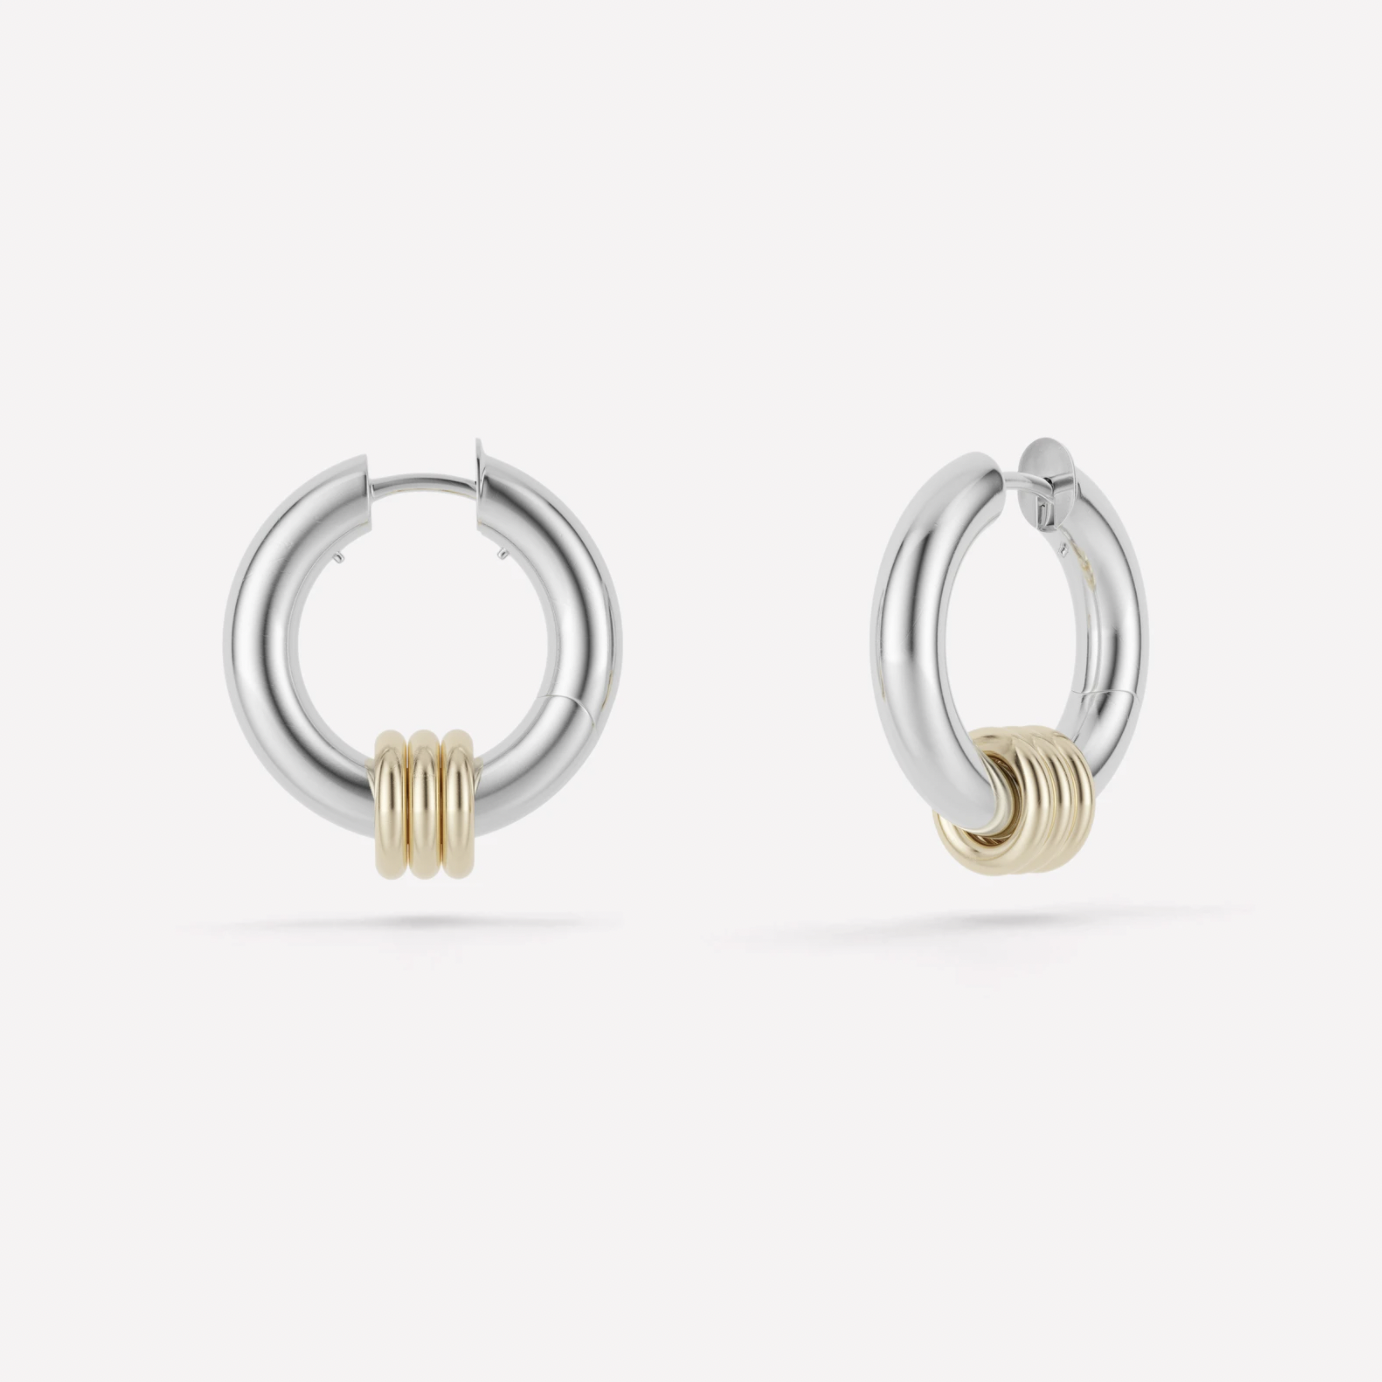 Elegant Gold Tone CZ Hoop Earrings – Cosmopolitan Earrings